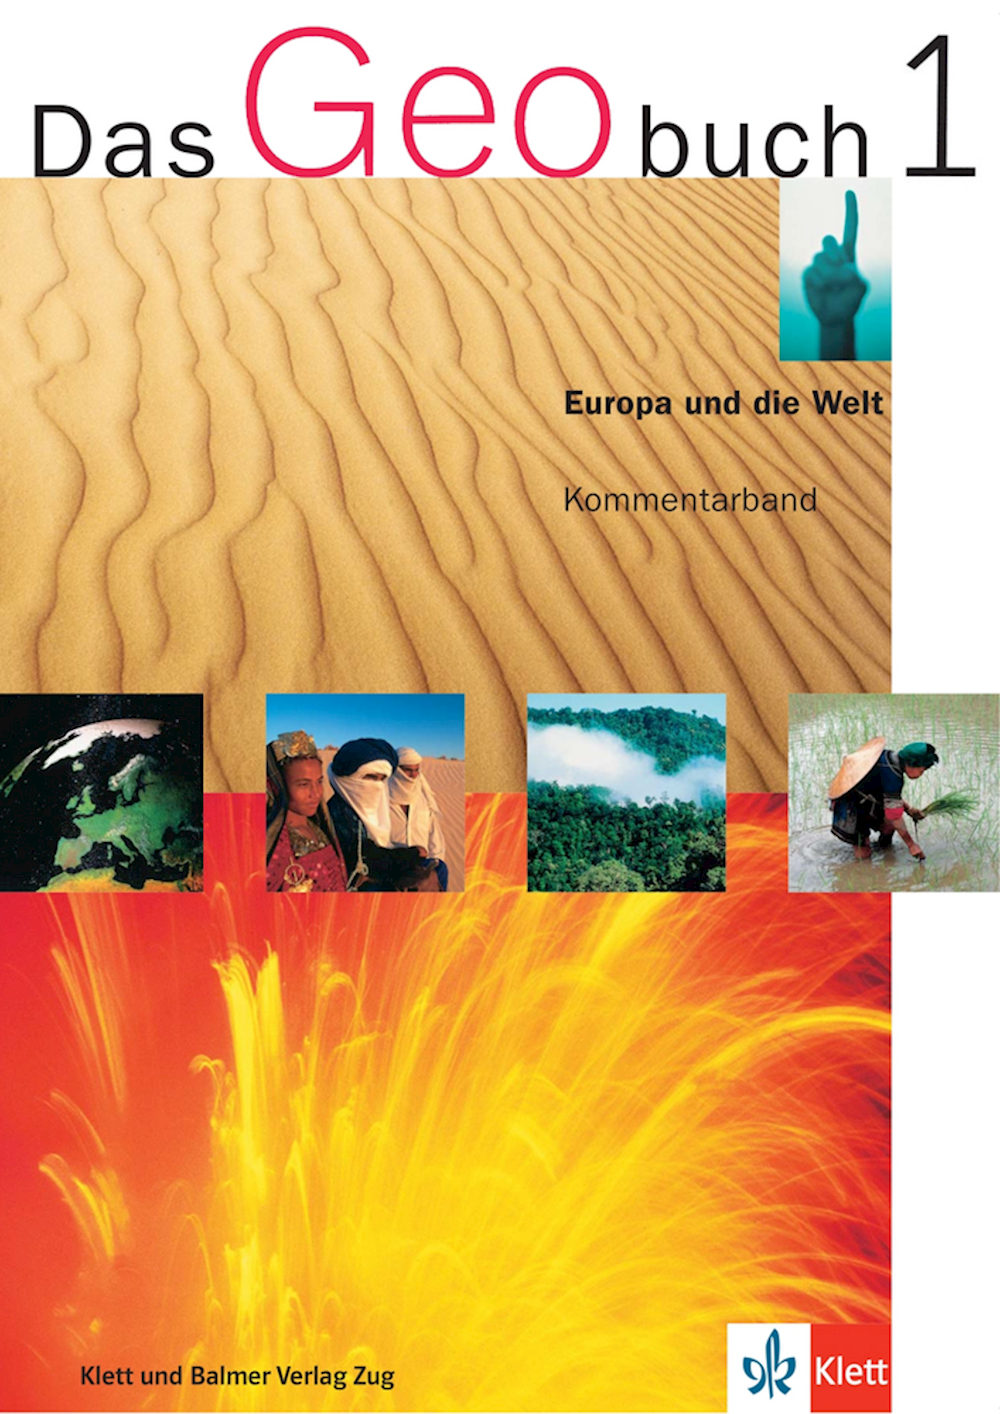 Das Geobuch 1 Kommentarband mit CD-ROM Europa und